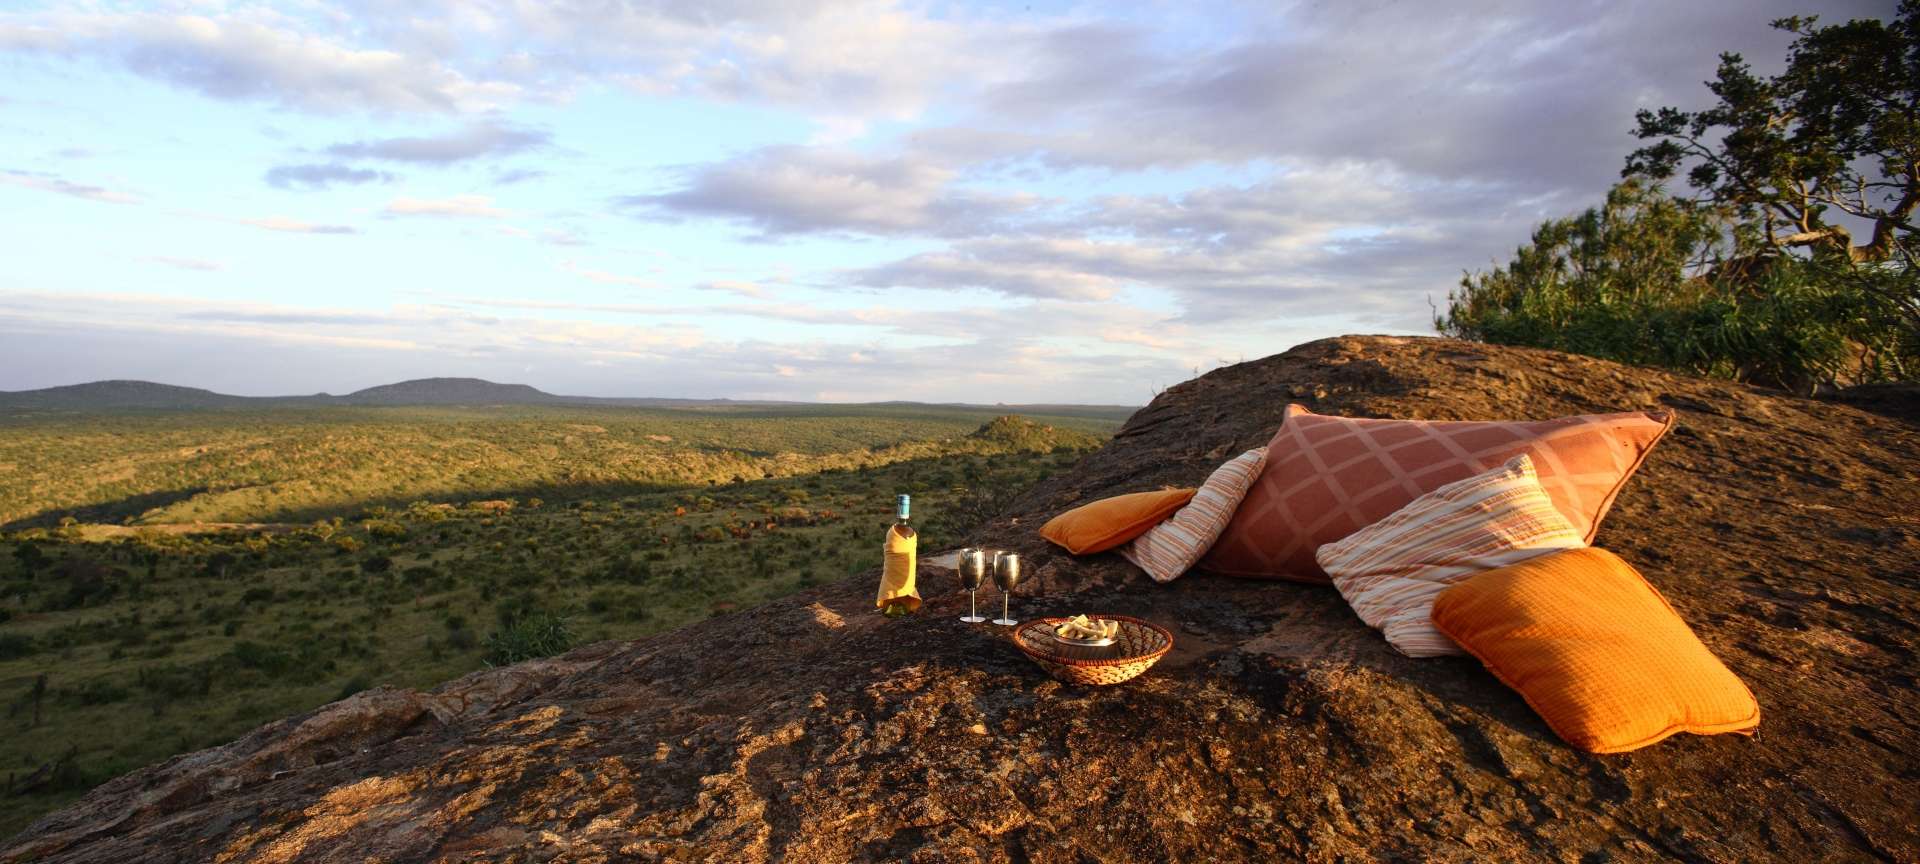 Kenya 10 Romantic Getaways